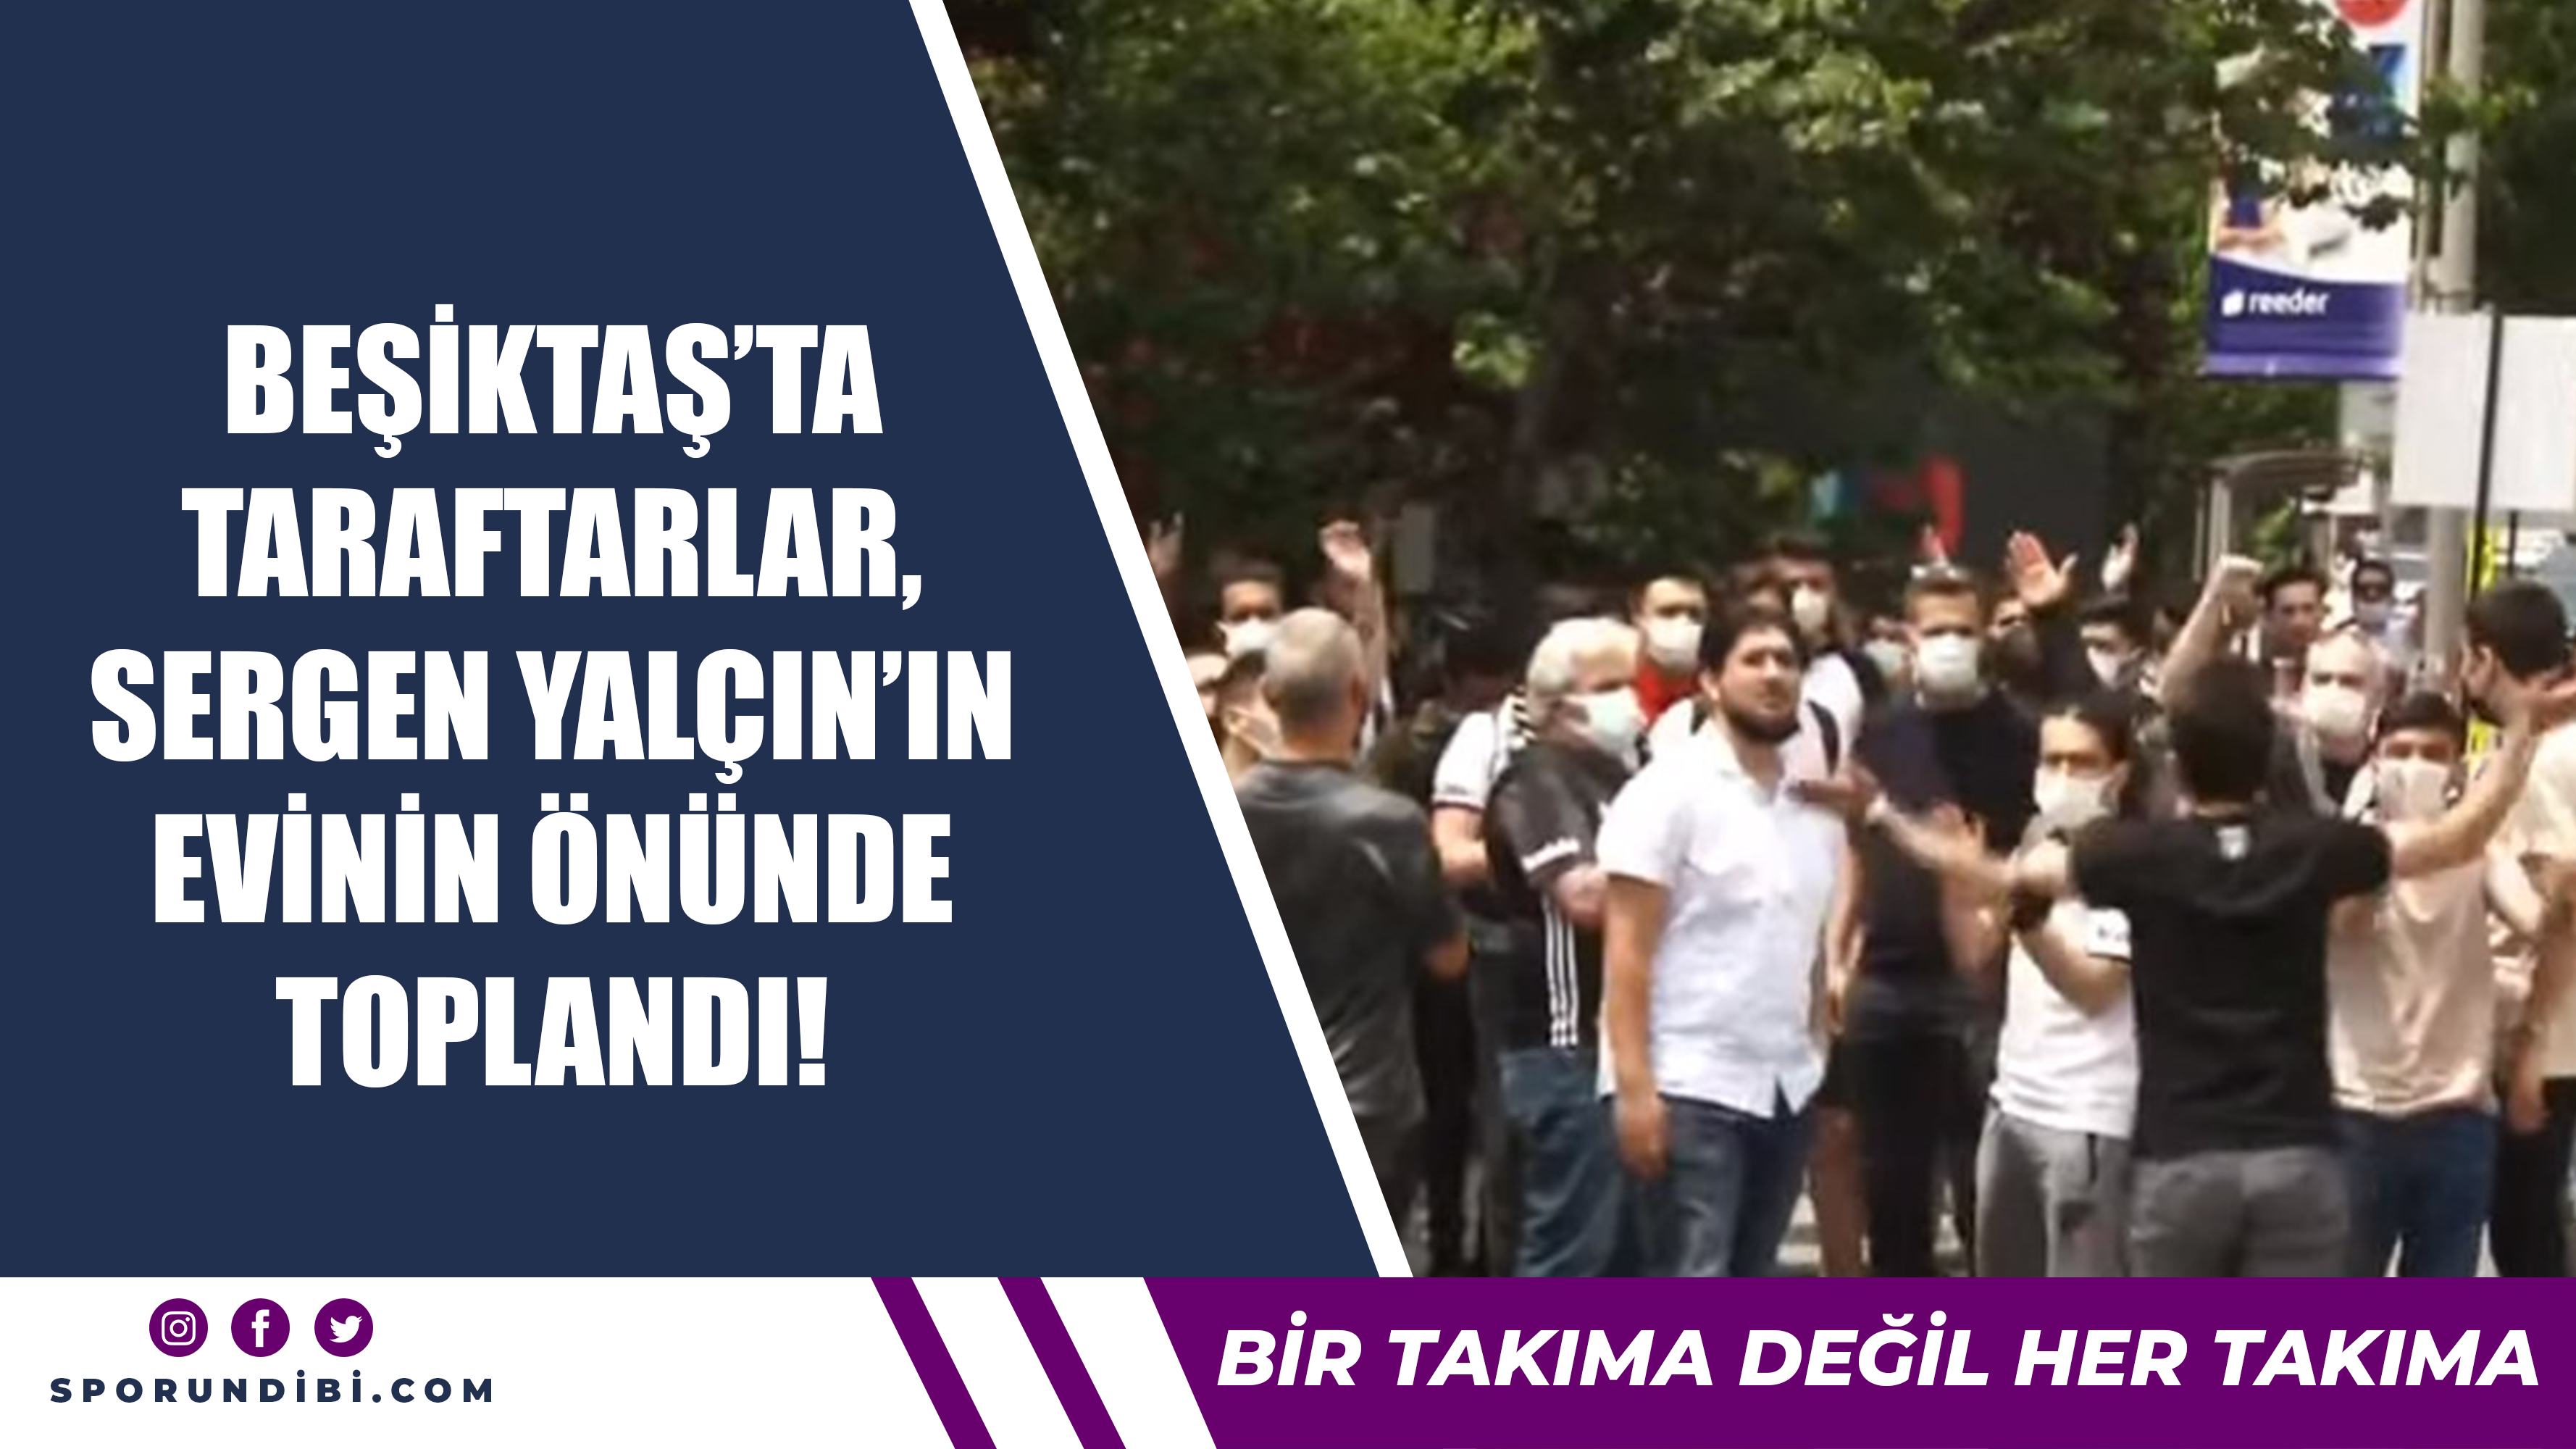 Beşiktaş'ta taraftarlar, Sergen Yalçın'ın evinin önünde toplandı!